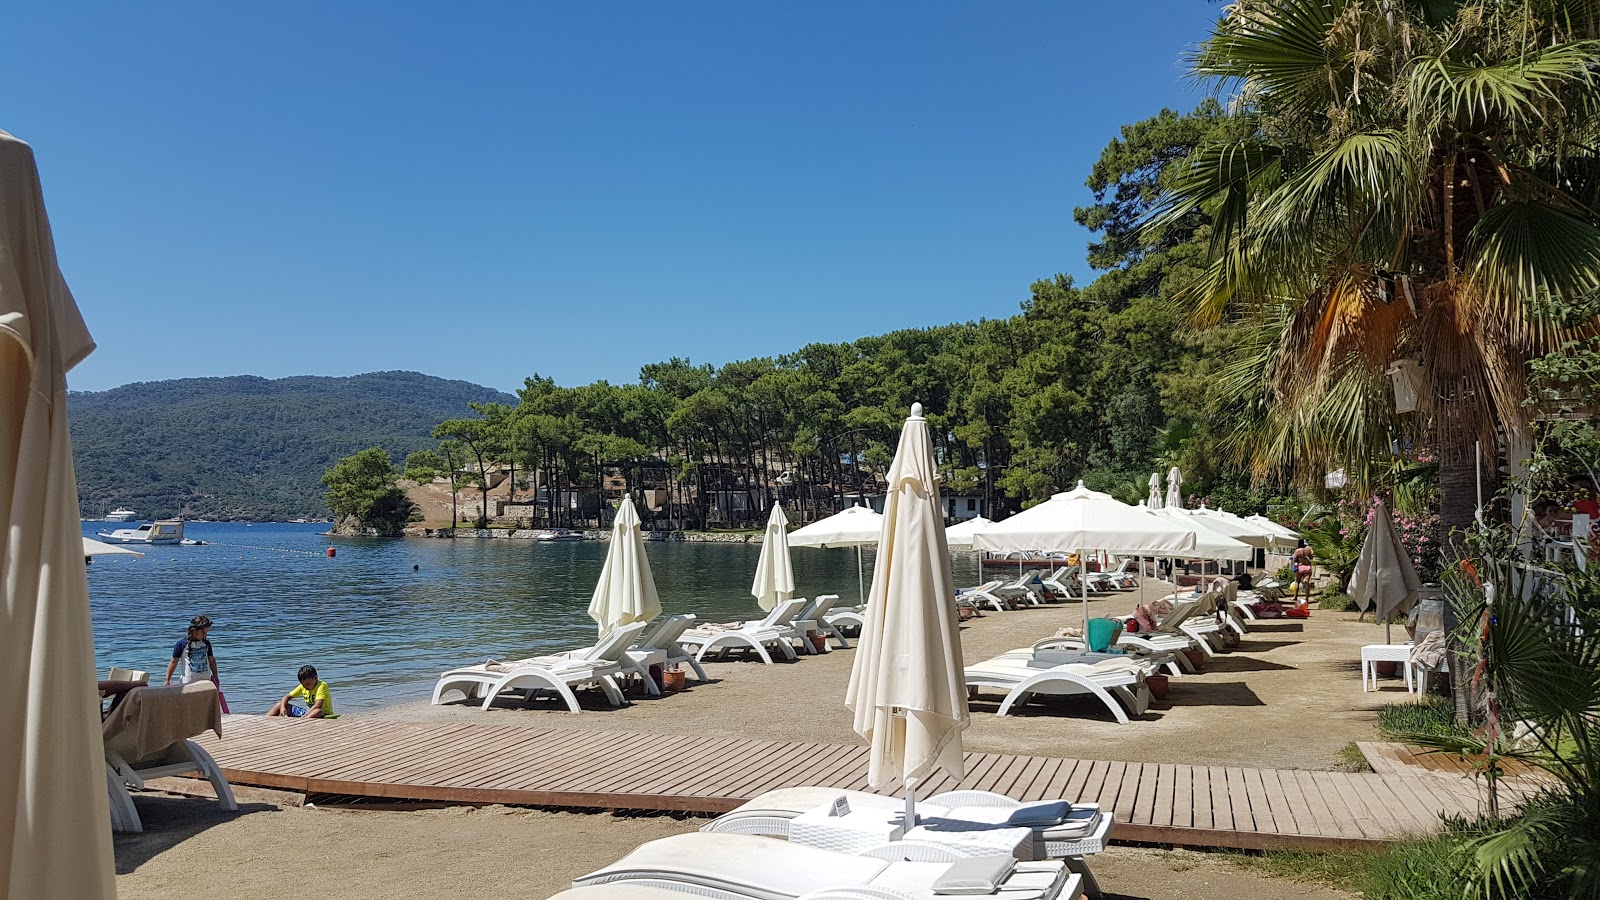 Aksaz Plajı VII'in fotoğrafı kısmen otel alanı